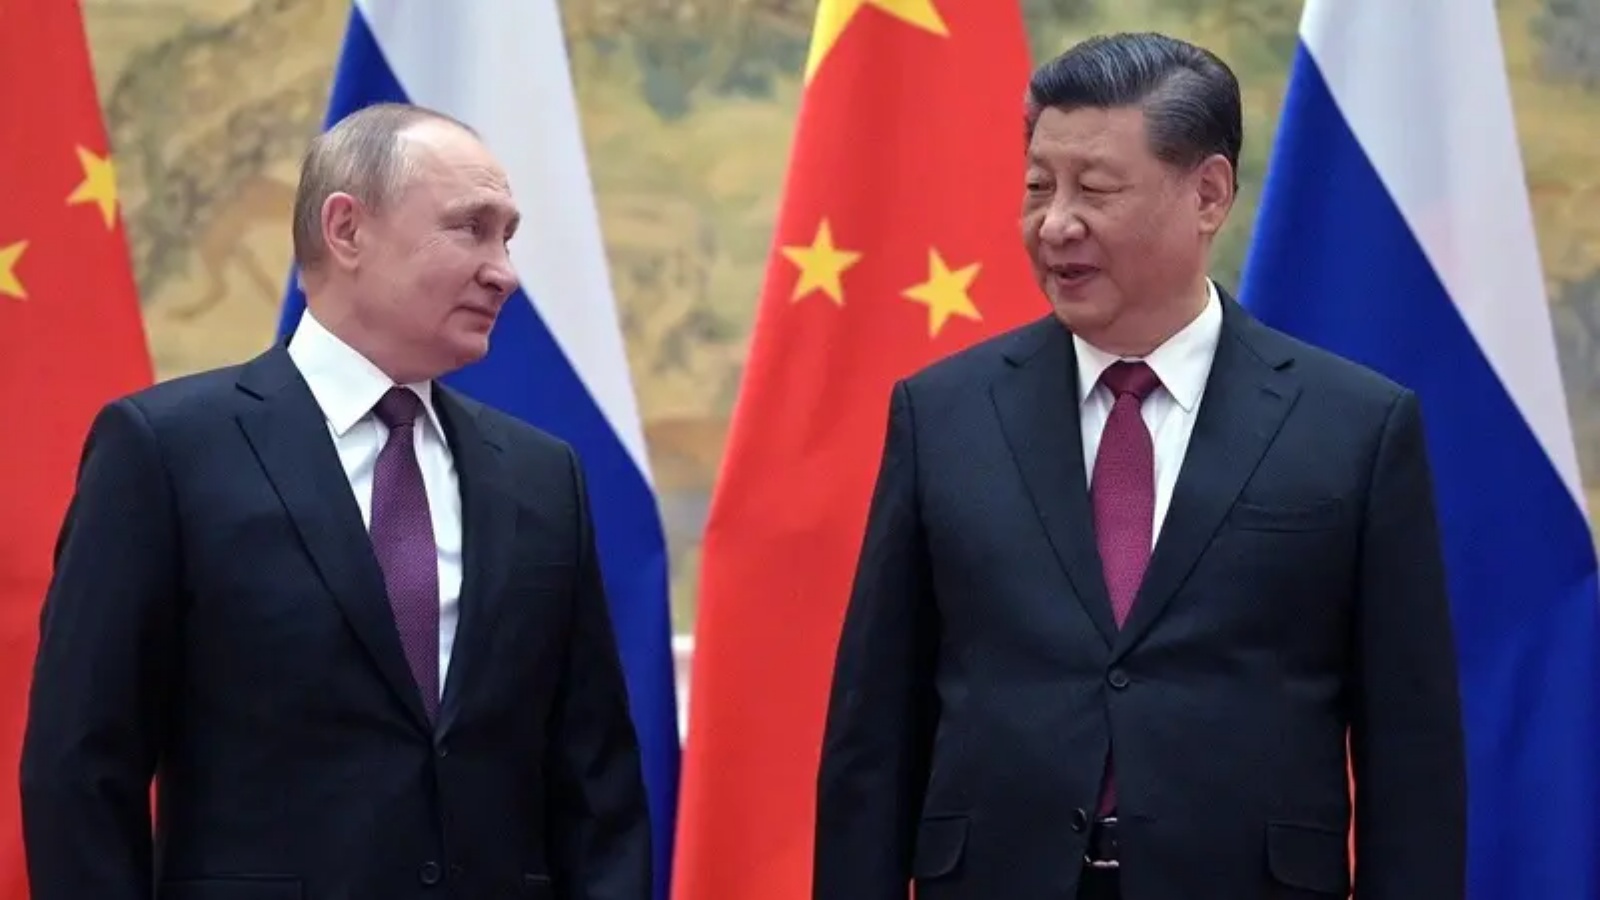 الرئيس الروسي فلاديمير بوتين (إلى اليسار) والرئيس الصيني شي جينبينغ في صورة أثناء لقائهما في بكين، 4 فبراير 2022.